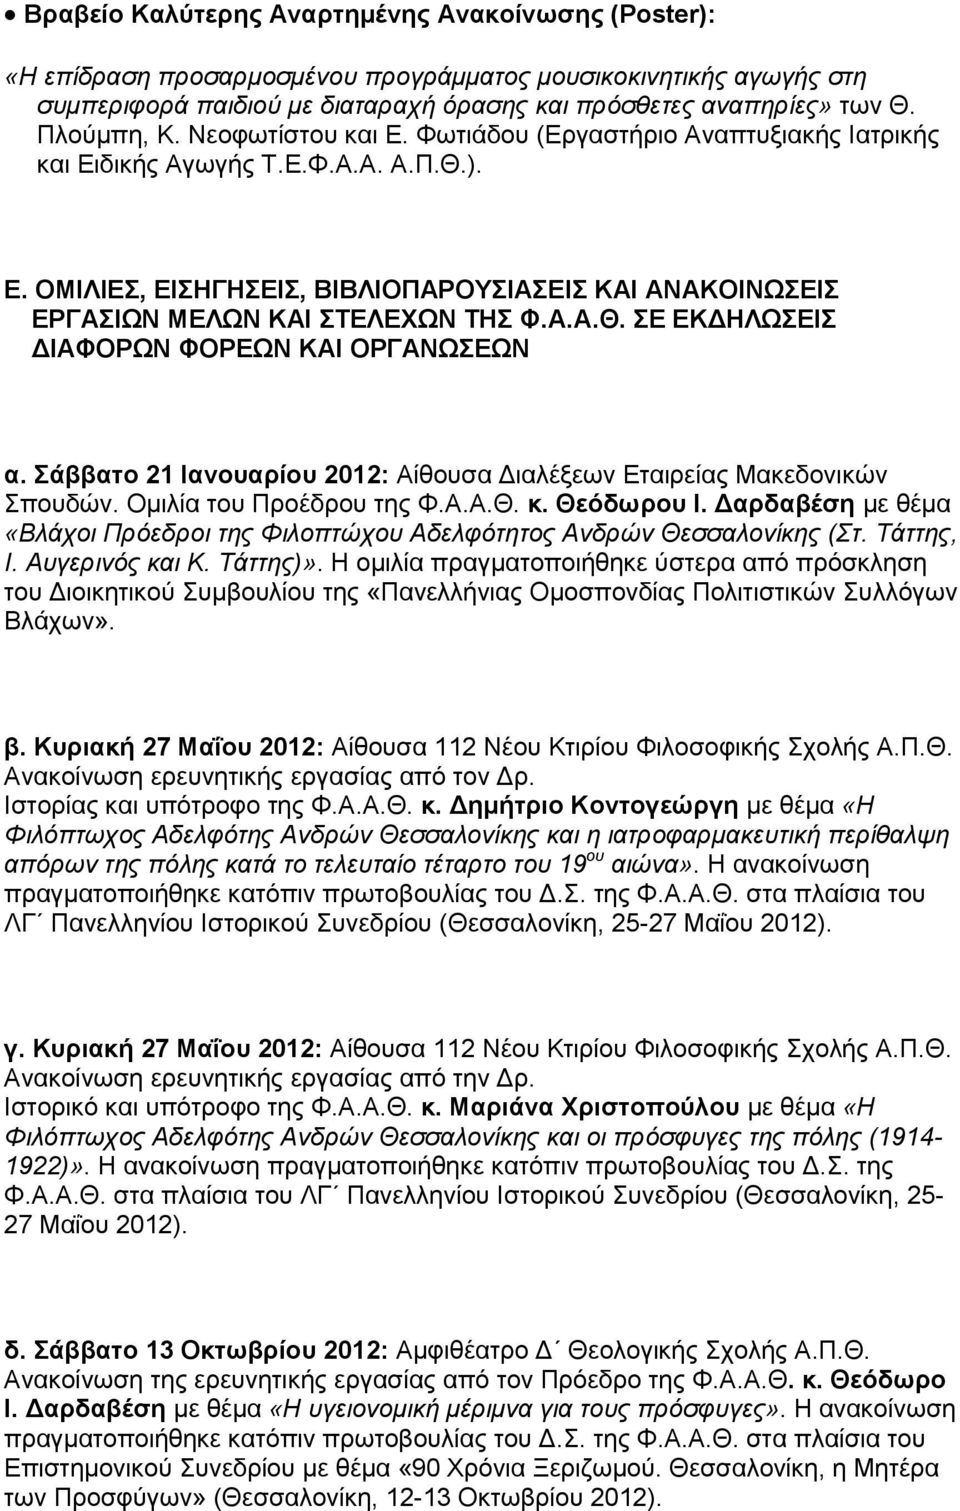 Α.Α.Θ. ΣΕ ΕΚΔΗΛΩΣΕΙΣ ΔΙΑΦΟΡΩΝ ΦΟΡΕΩΝ ΚΑΙ ΟΡΓΑΝΩΣΕΩΝ α. Σάββατο 21 Ιανουαρίου 2012: Αίθουσα Διαλέξεων Εταιρείας Μακεδονικών Σπουδών. Ομιλία του Προέδρου της Φ.Α.Α.Θ. κ. Θεόδωρου Ι.